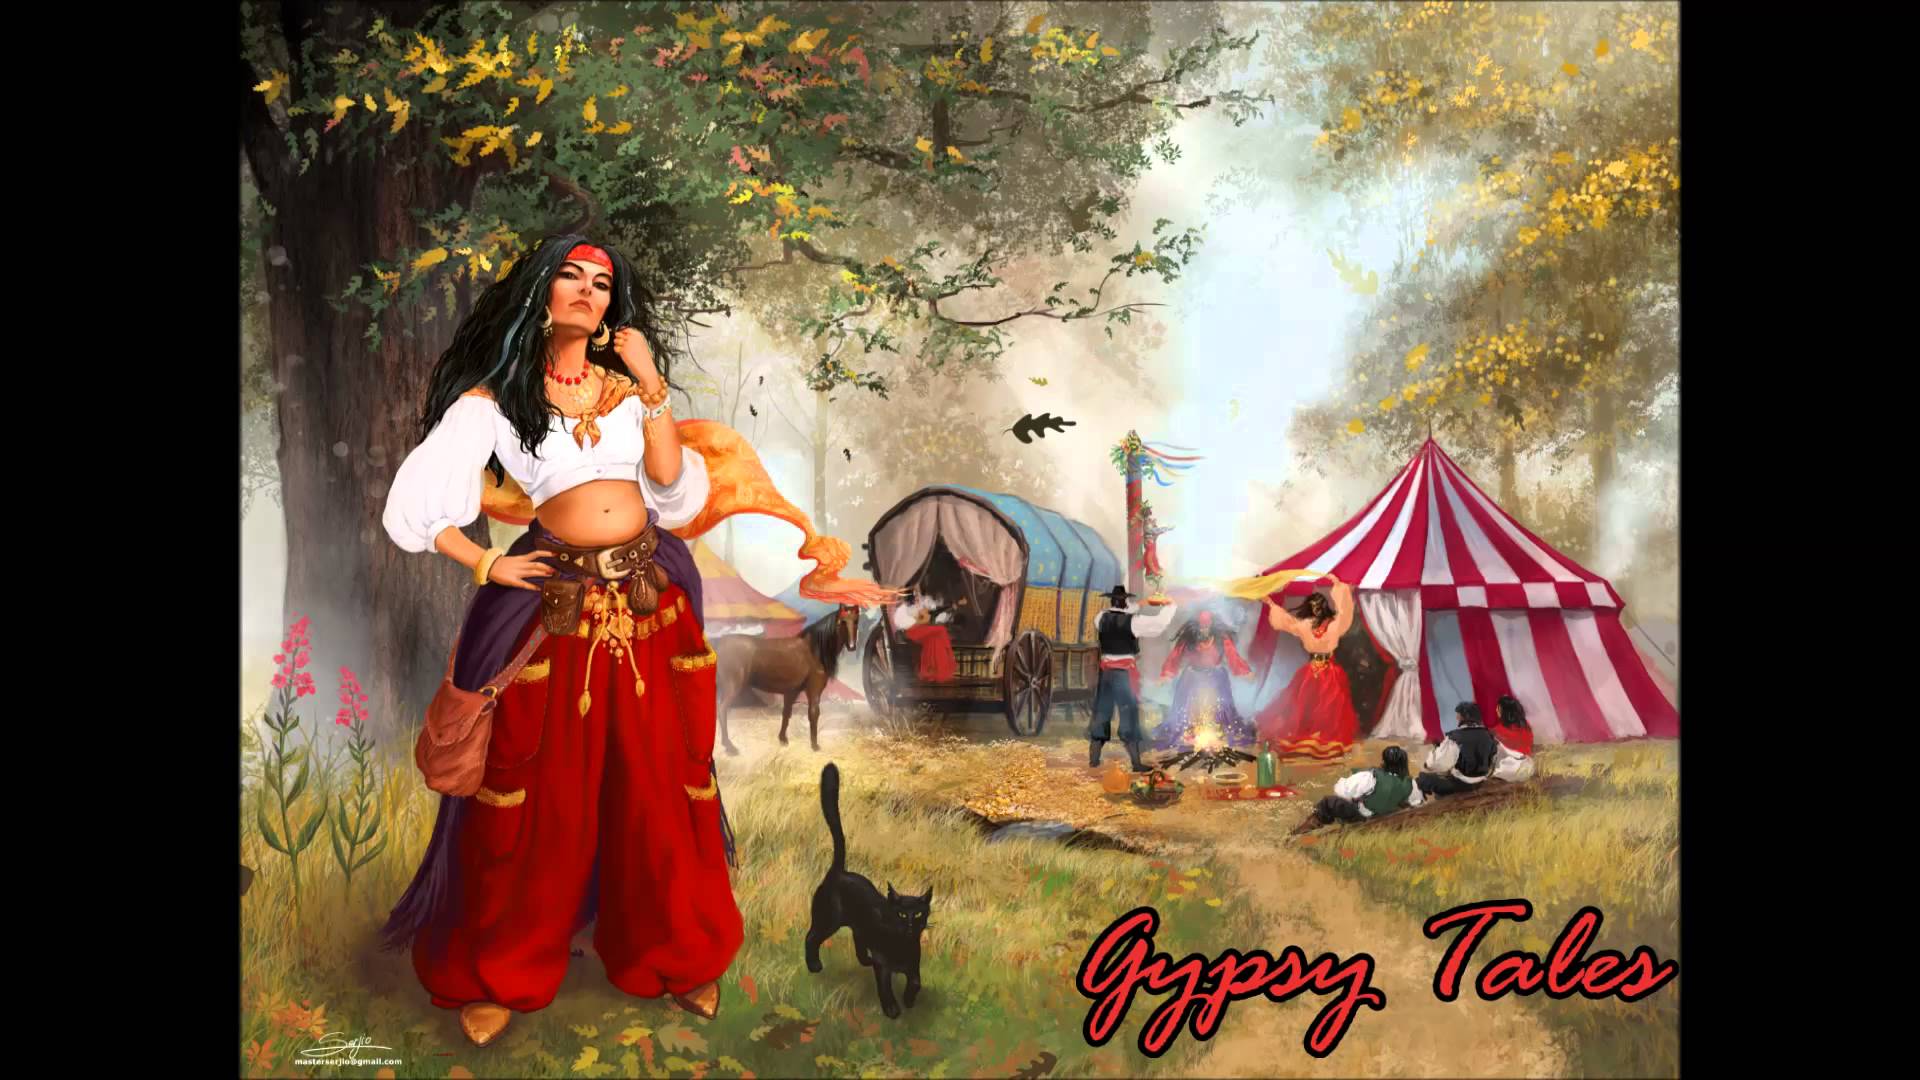 Fantasy Gypsy Music ~ Gypsy Tales - YouTube